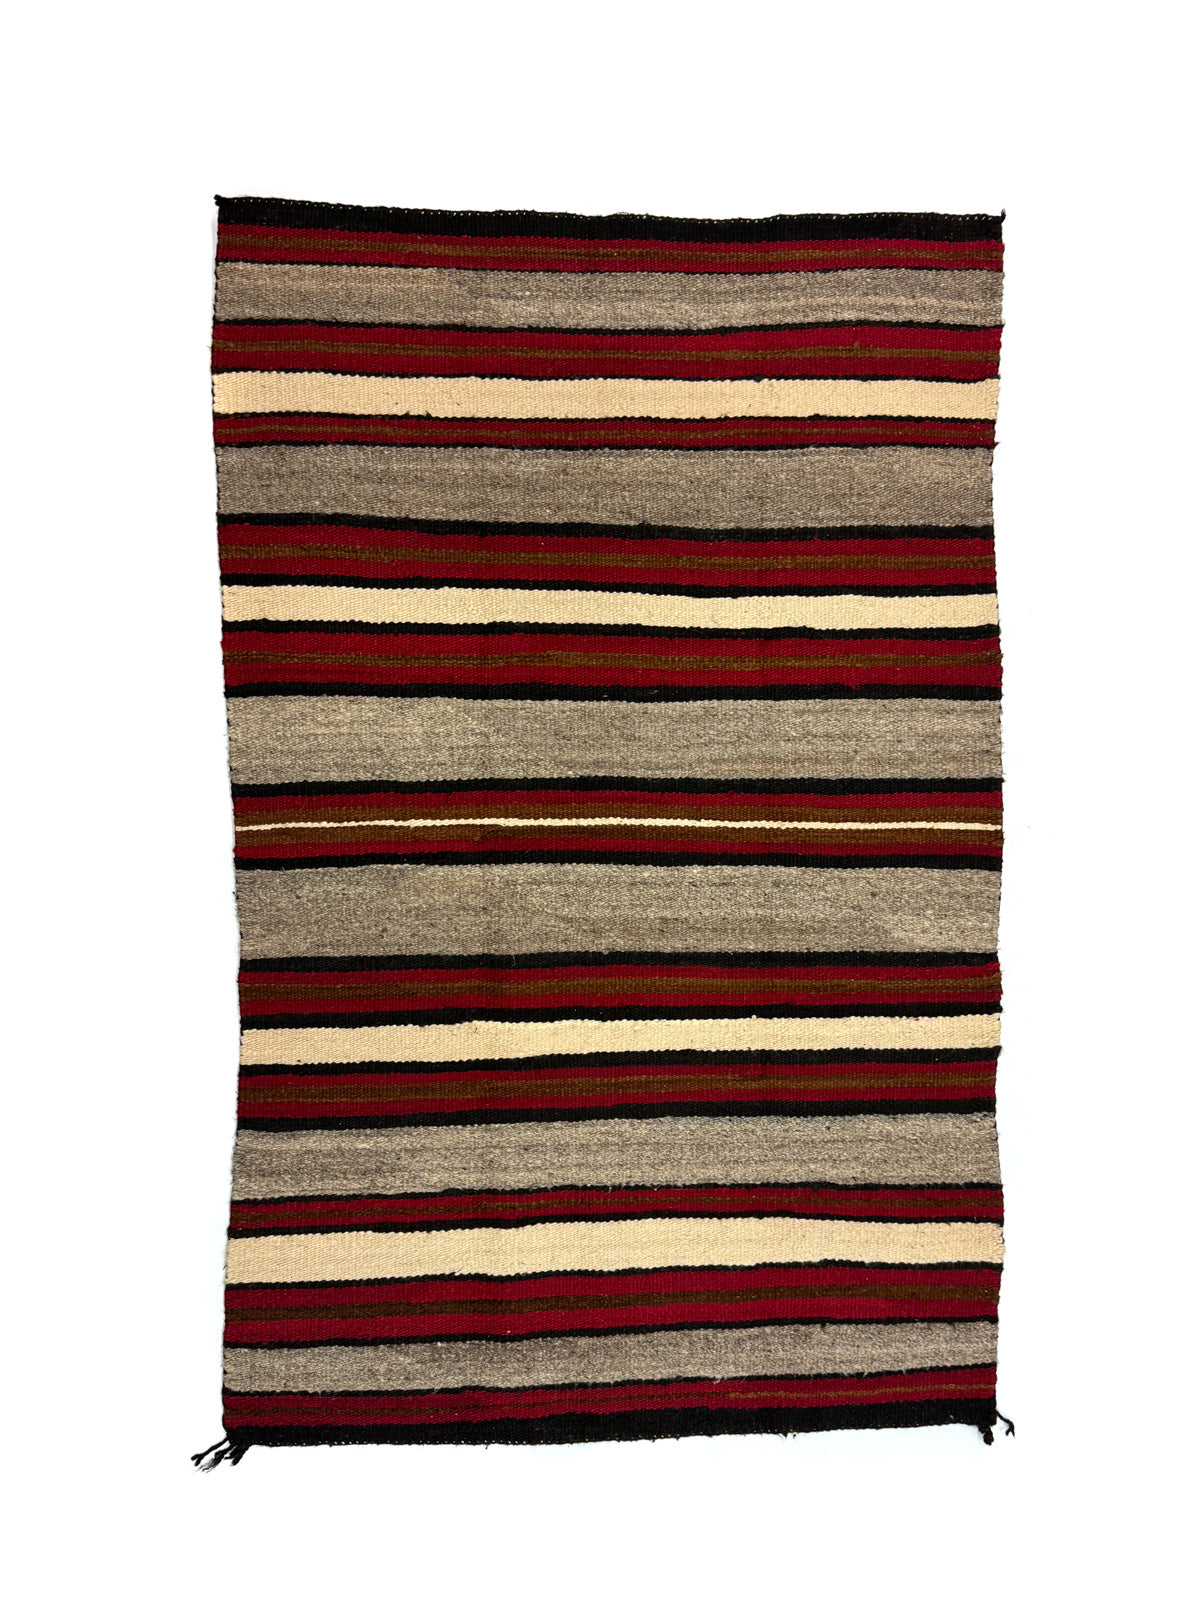 Navajo Saddle Blanket c. 1920-30s, 52" x 33.5" (T92253-1123-004)